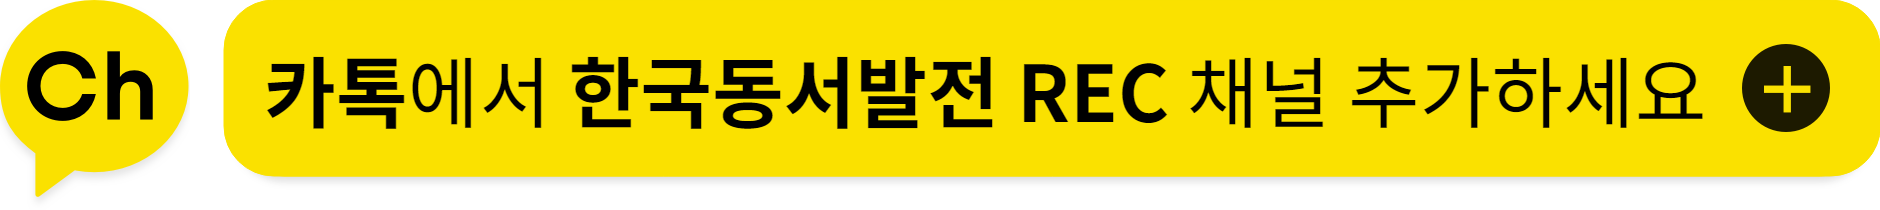 한국동서발전 REC 카카오톡 채널